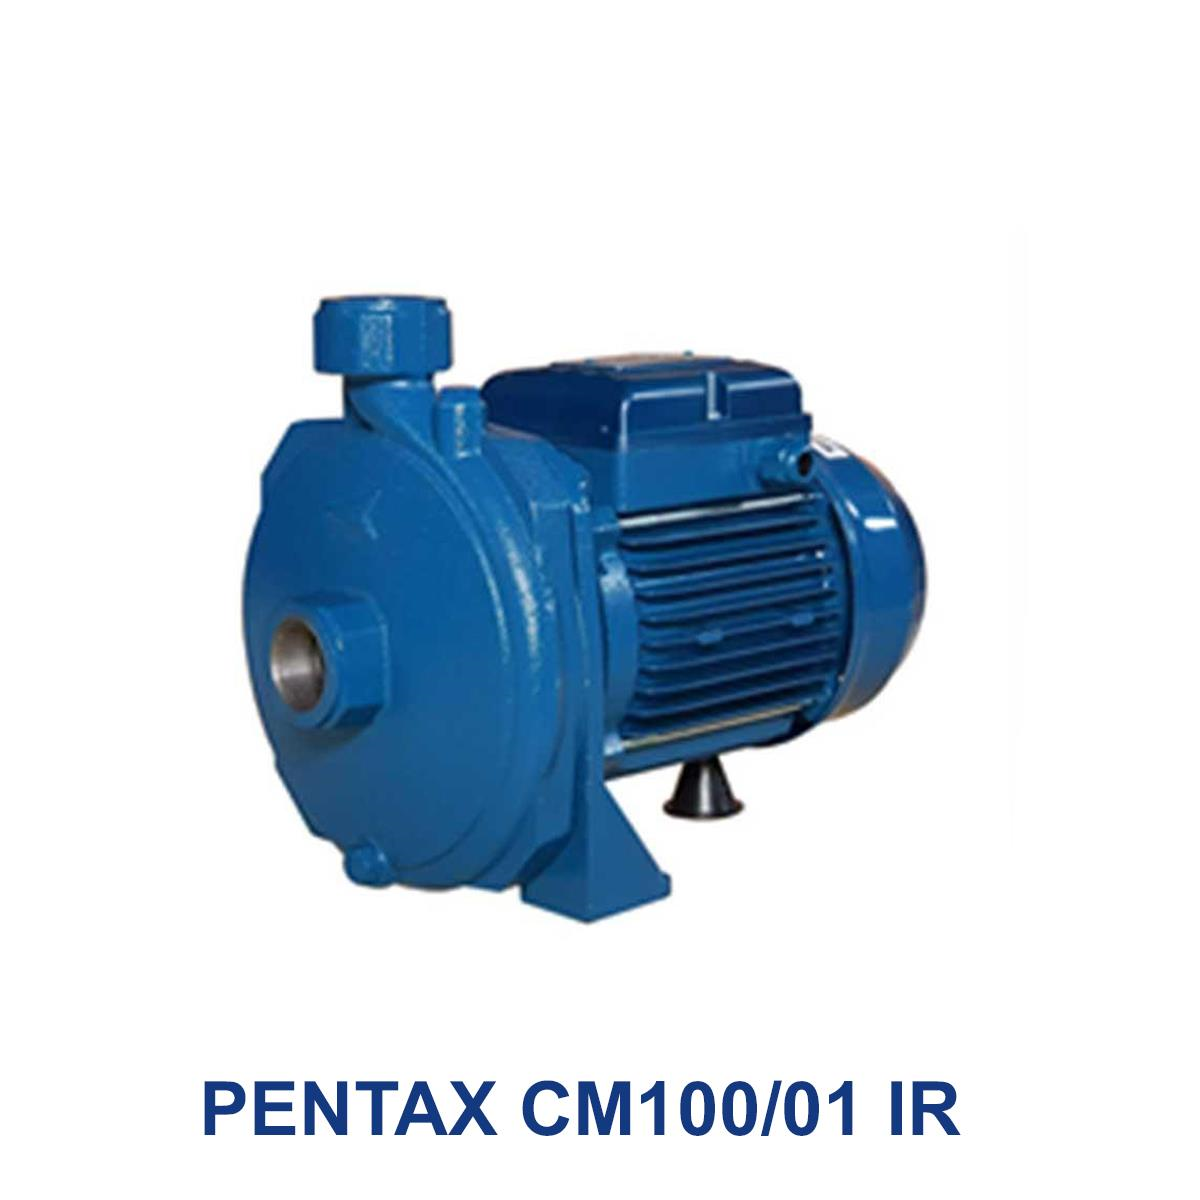 PENTAX-CM100-01-IR